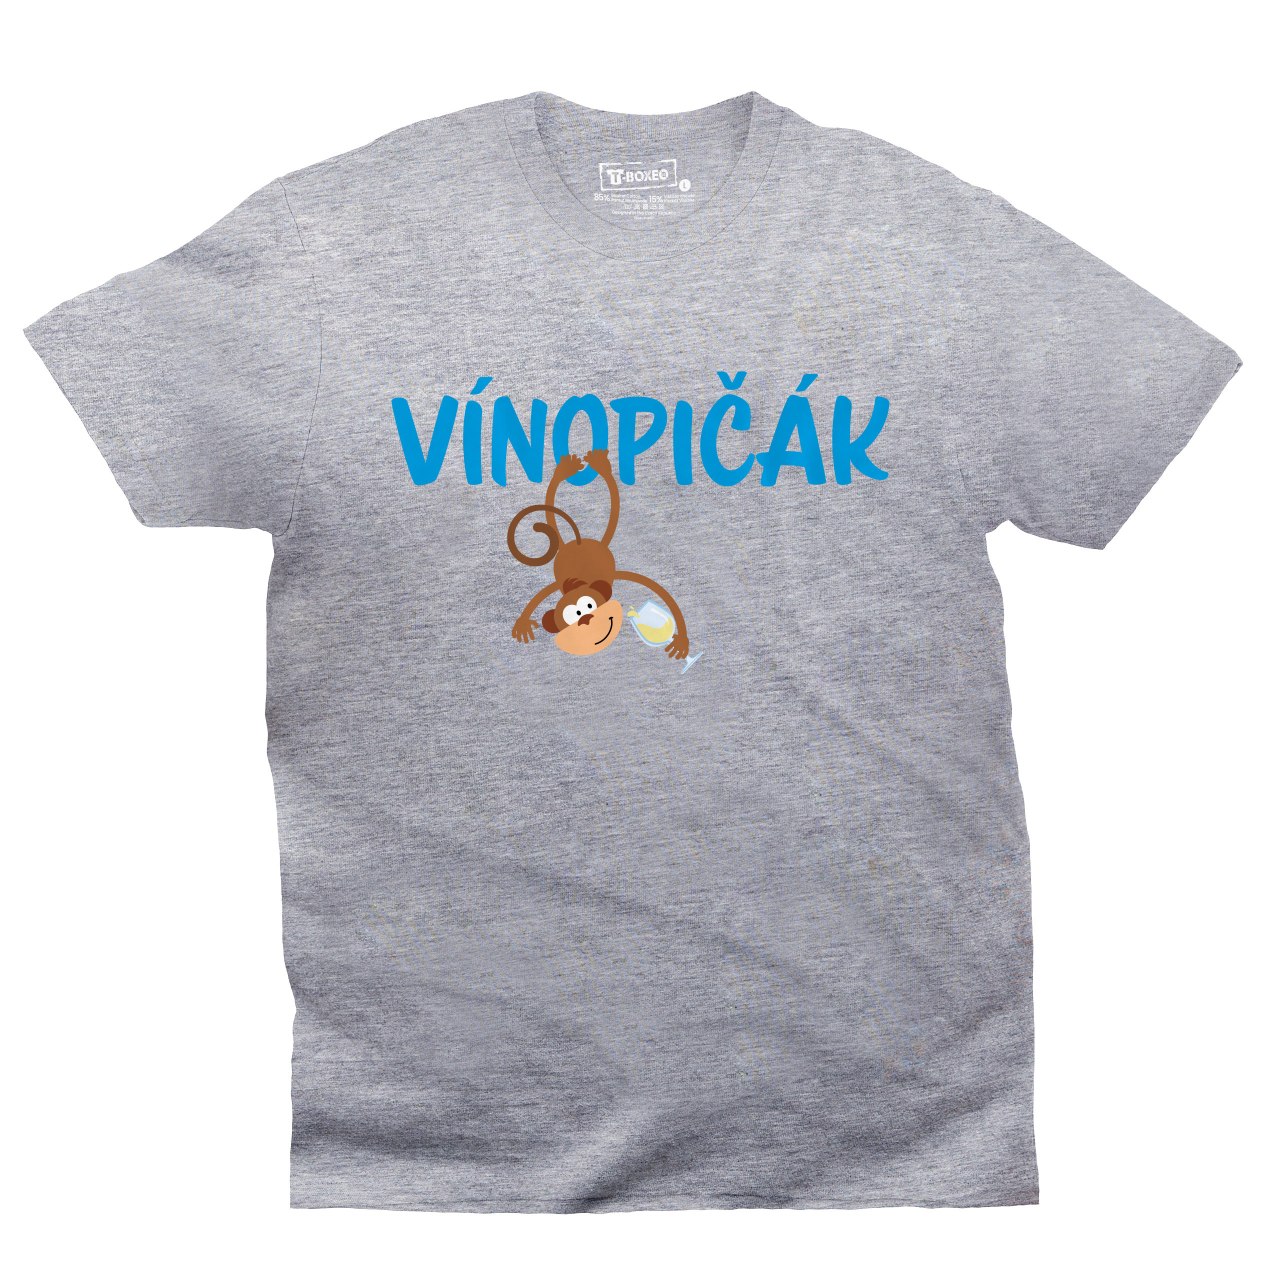 Pánské tričko s potiskem "Vínopičák - bílé víno"